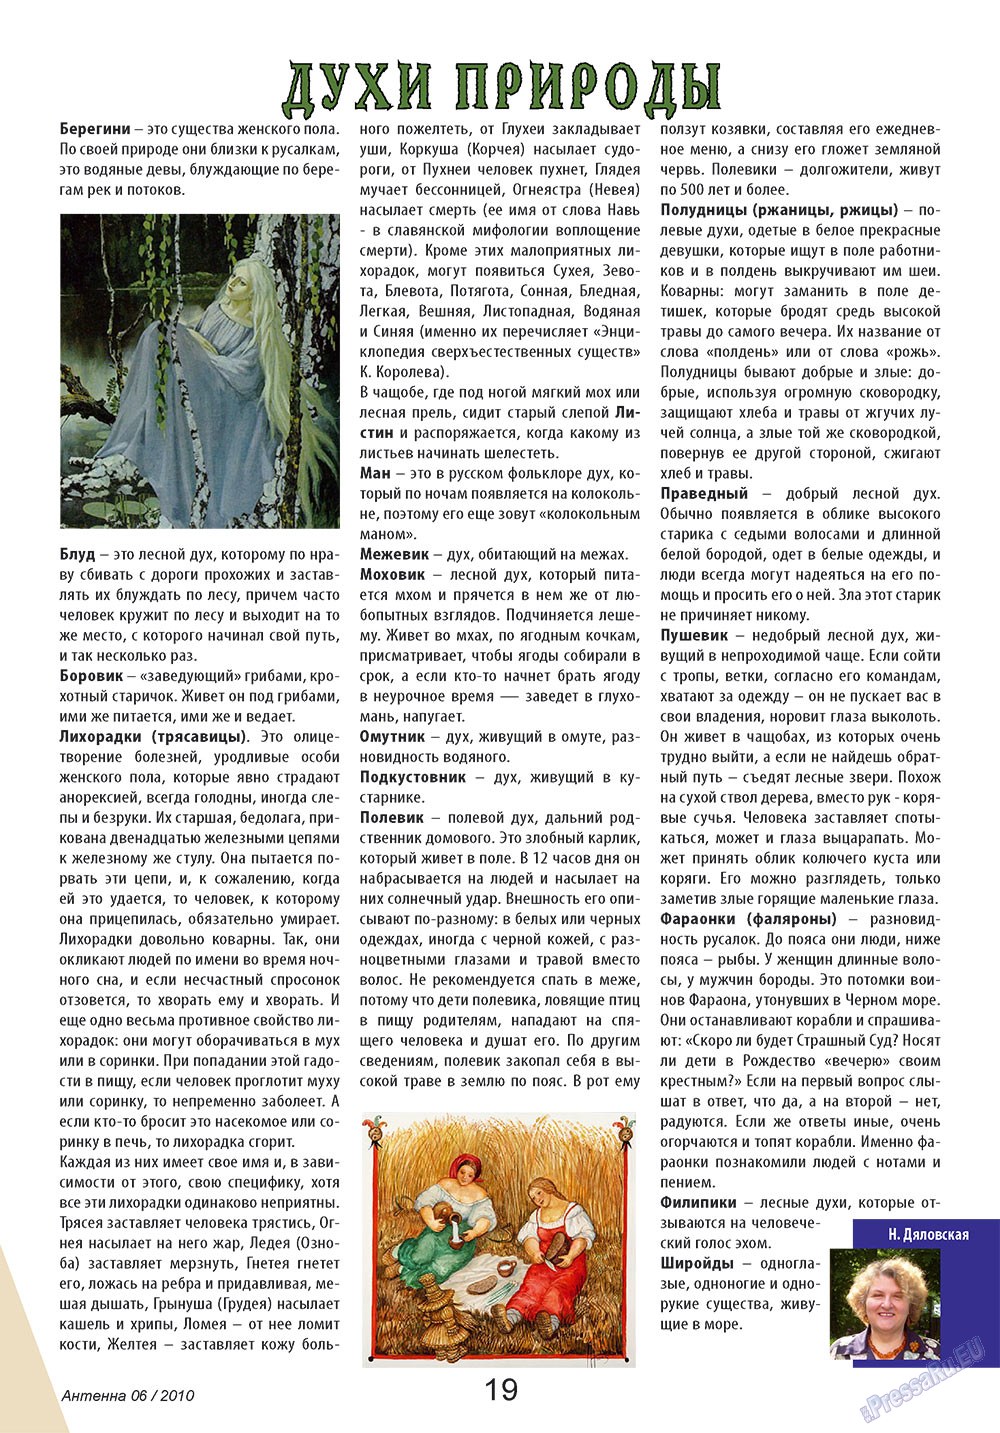 Антенна, журнал. 2010 №6 стр.19